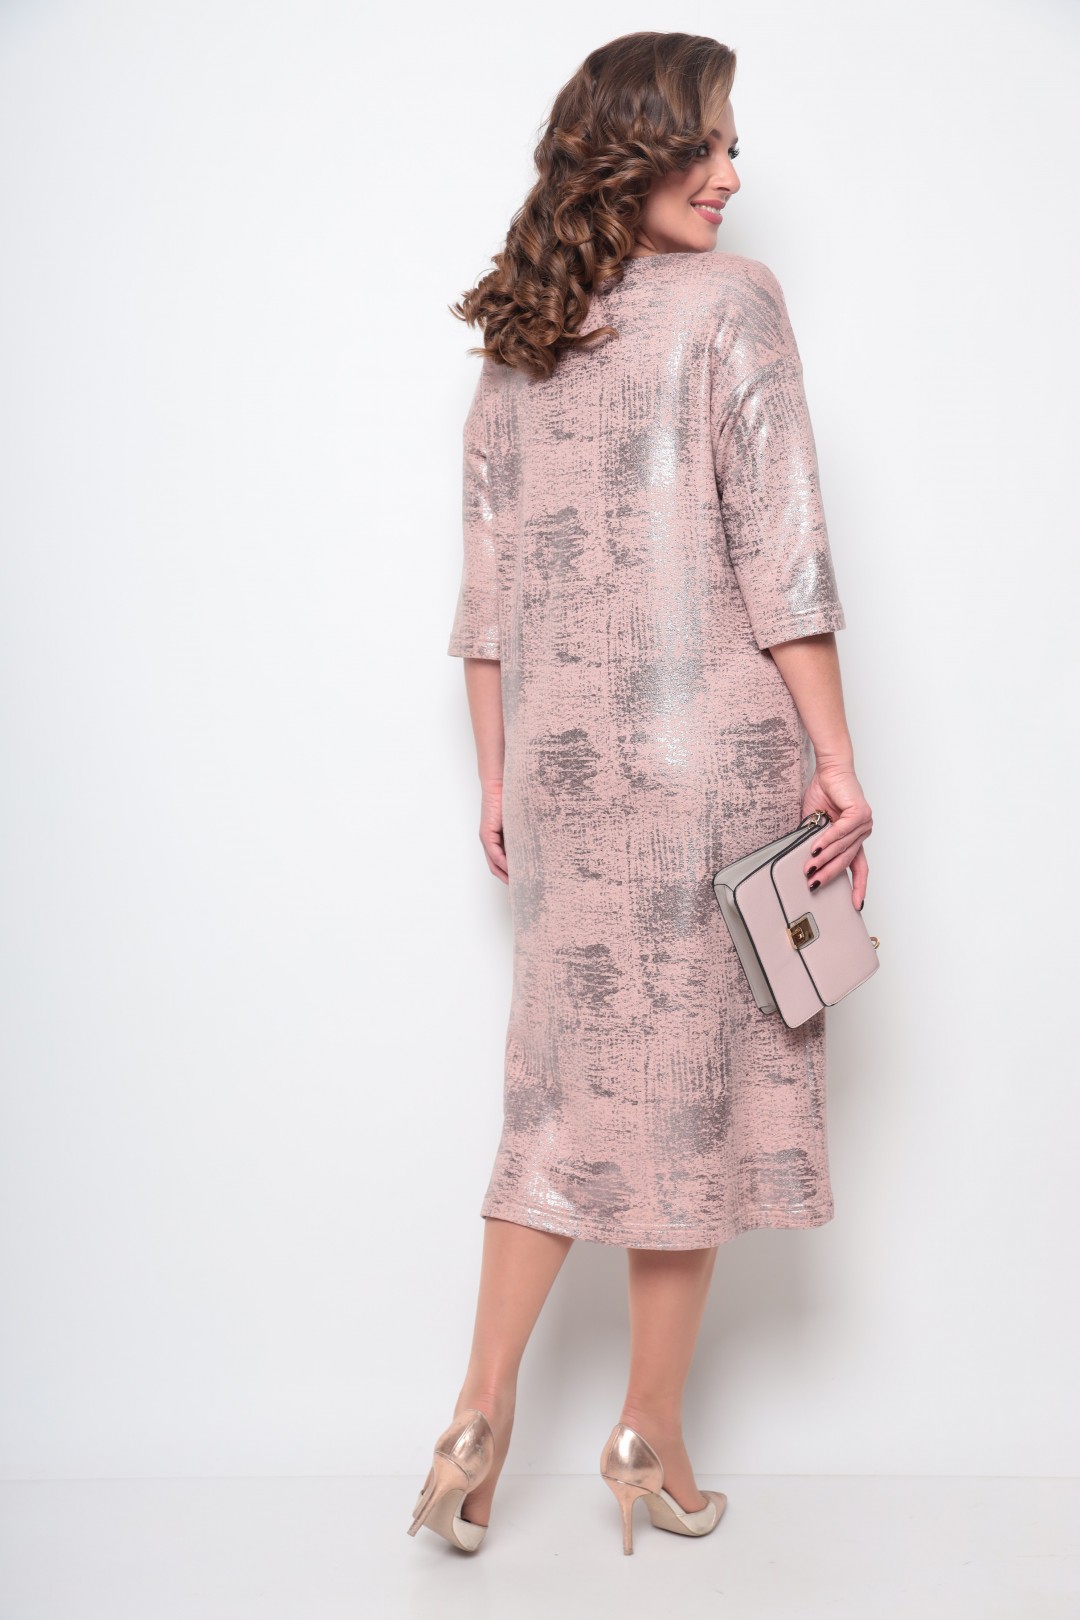 Платье Мишель Шик 2074 розовое золото